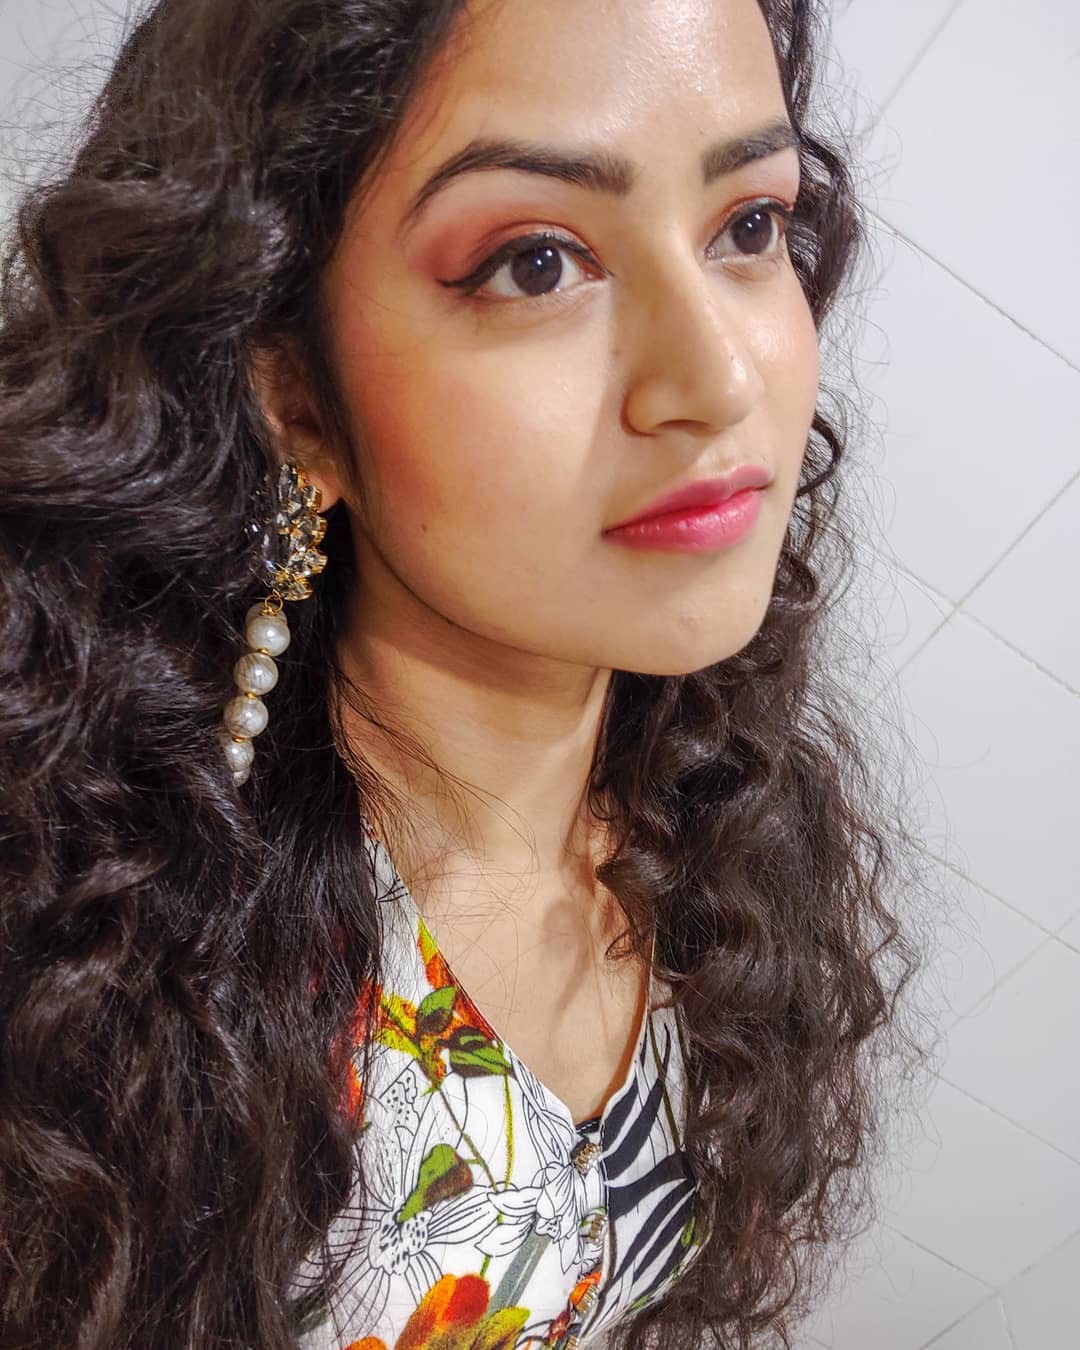 Farhina Parvez Jarimari Instagram, Hair coloring y Long hair: Pelo largo,  Ideas para teñir el cabello,  Chicas hermosas,  Sesión de fotos,  Farhina Parvez Jarimari  